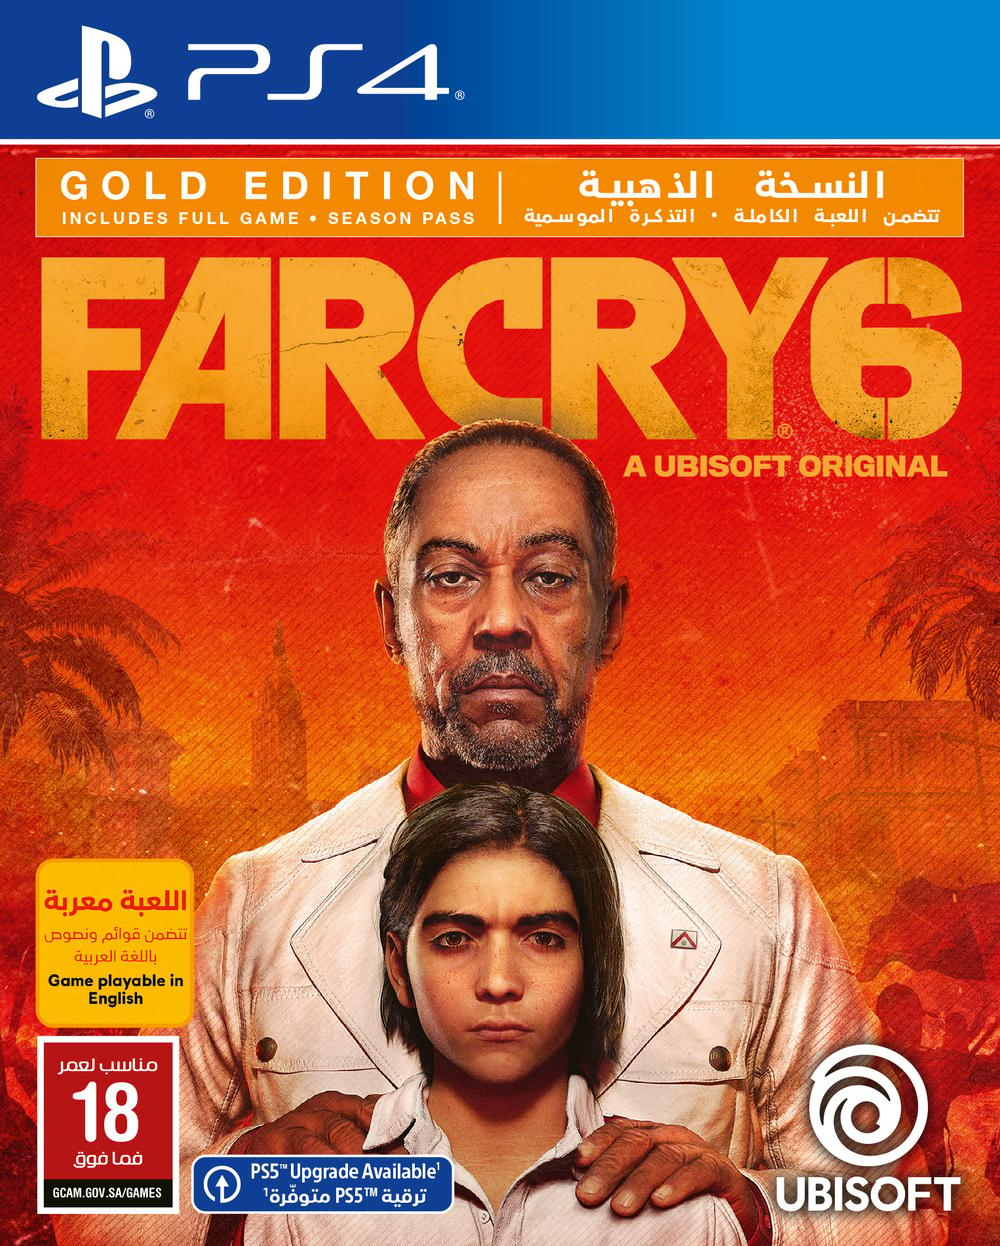 بلايستيشن لعبة | Far cry 6 النسخه الذهبية | PS4 - Modern Electronics